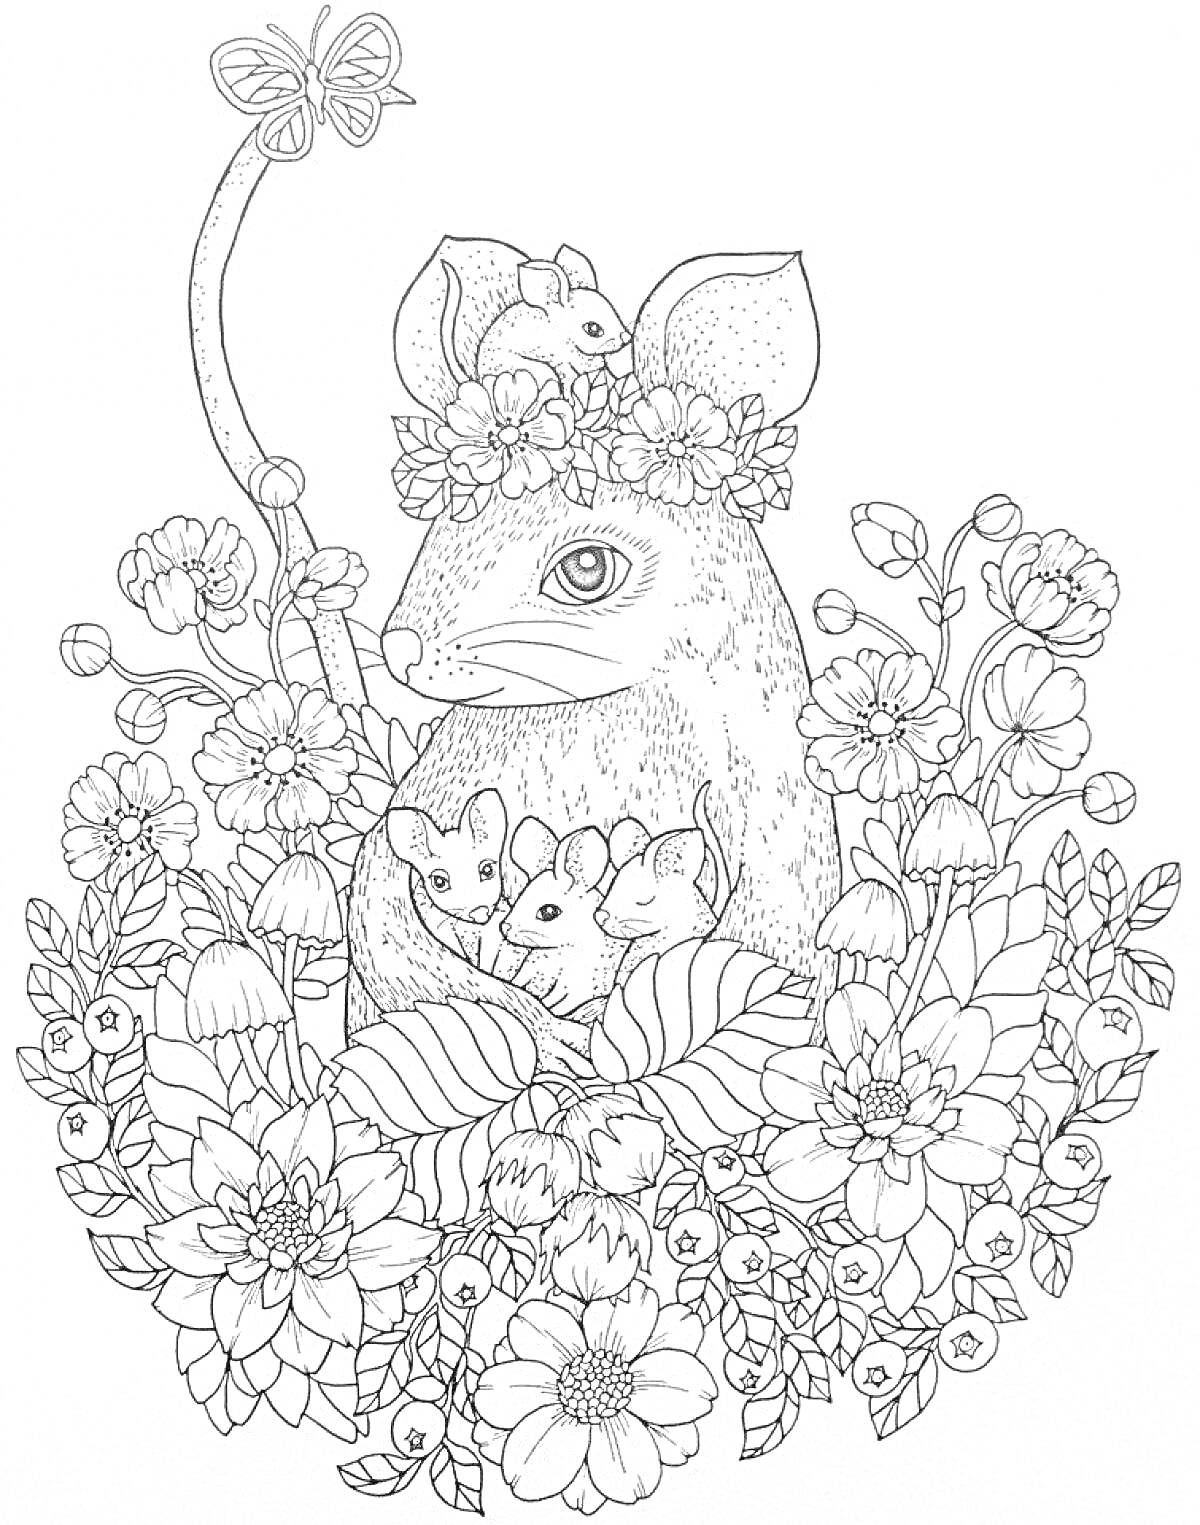 РаскраскаМышь в венке из цветов с мышатами, бабочкой и растениями